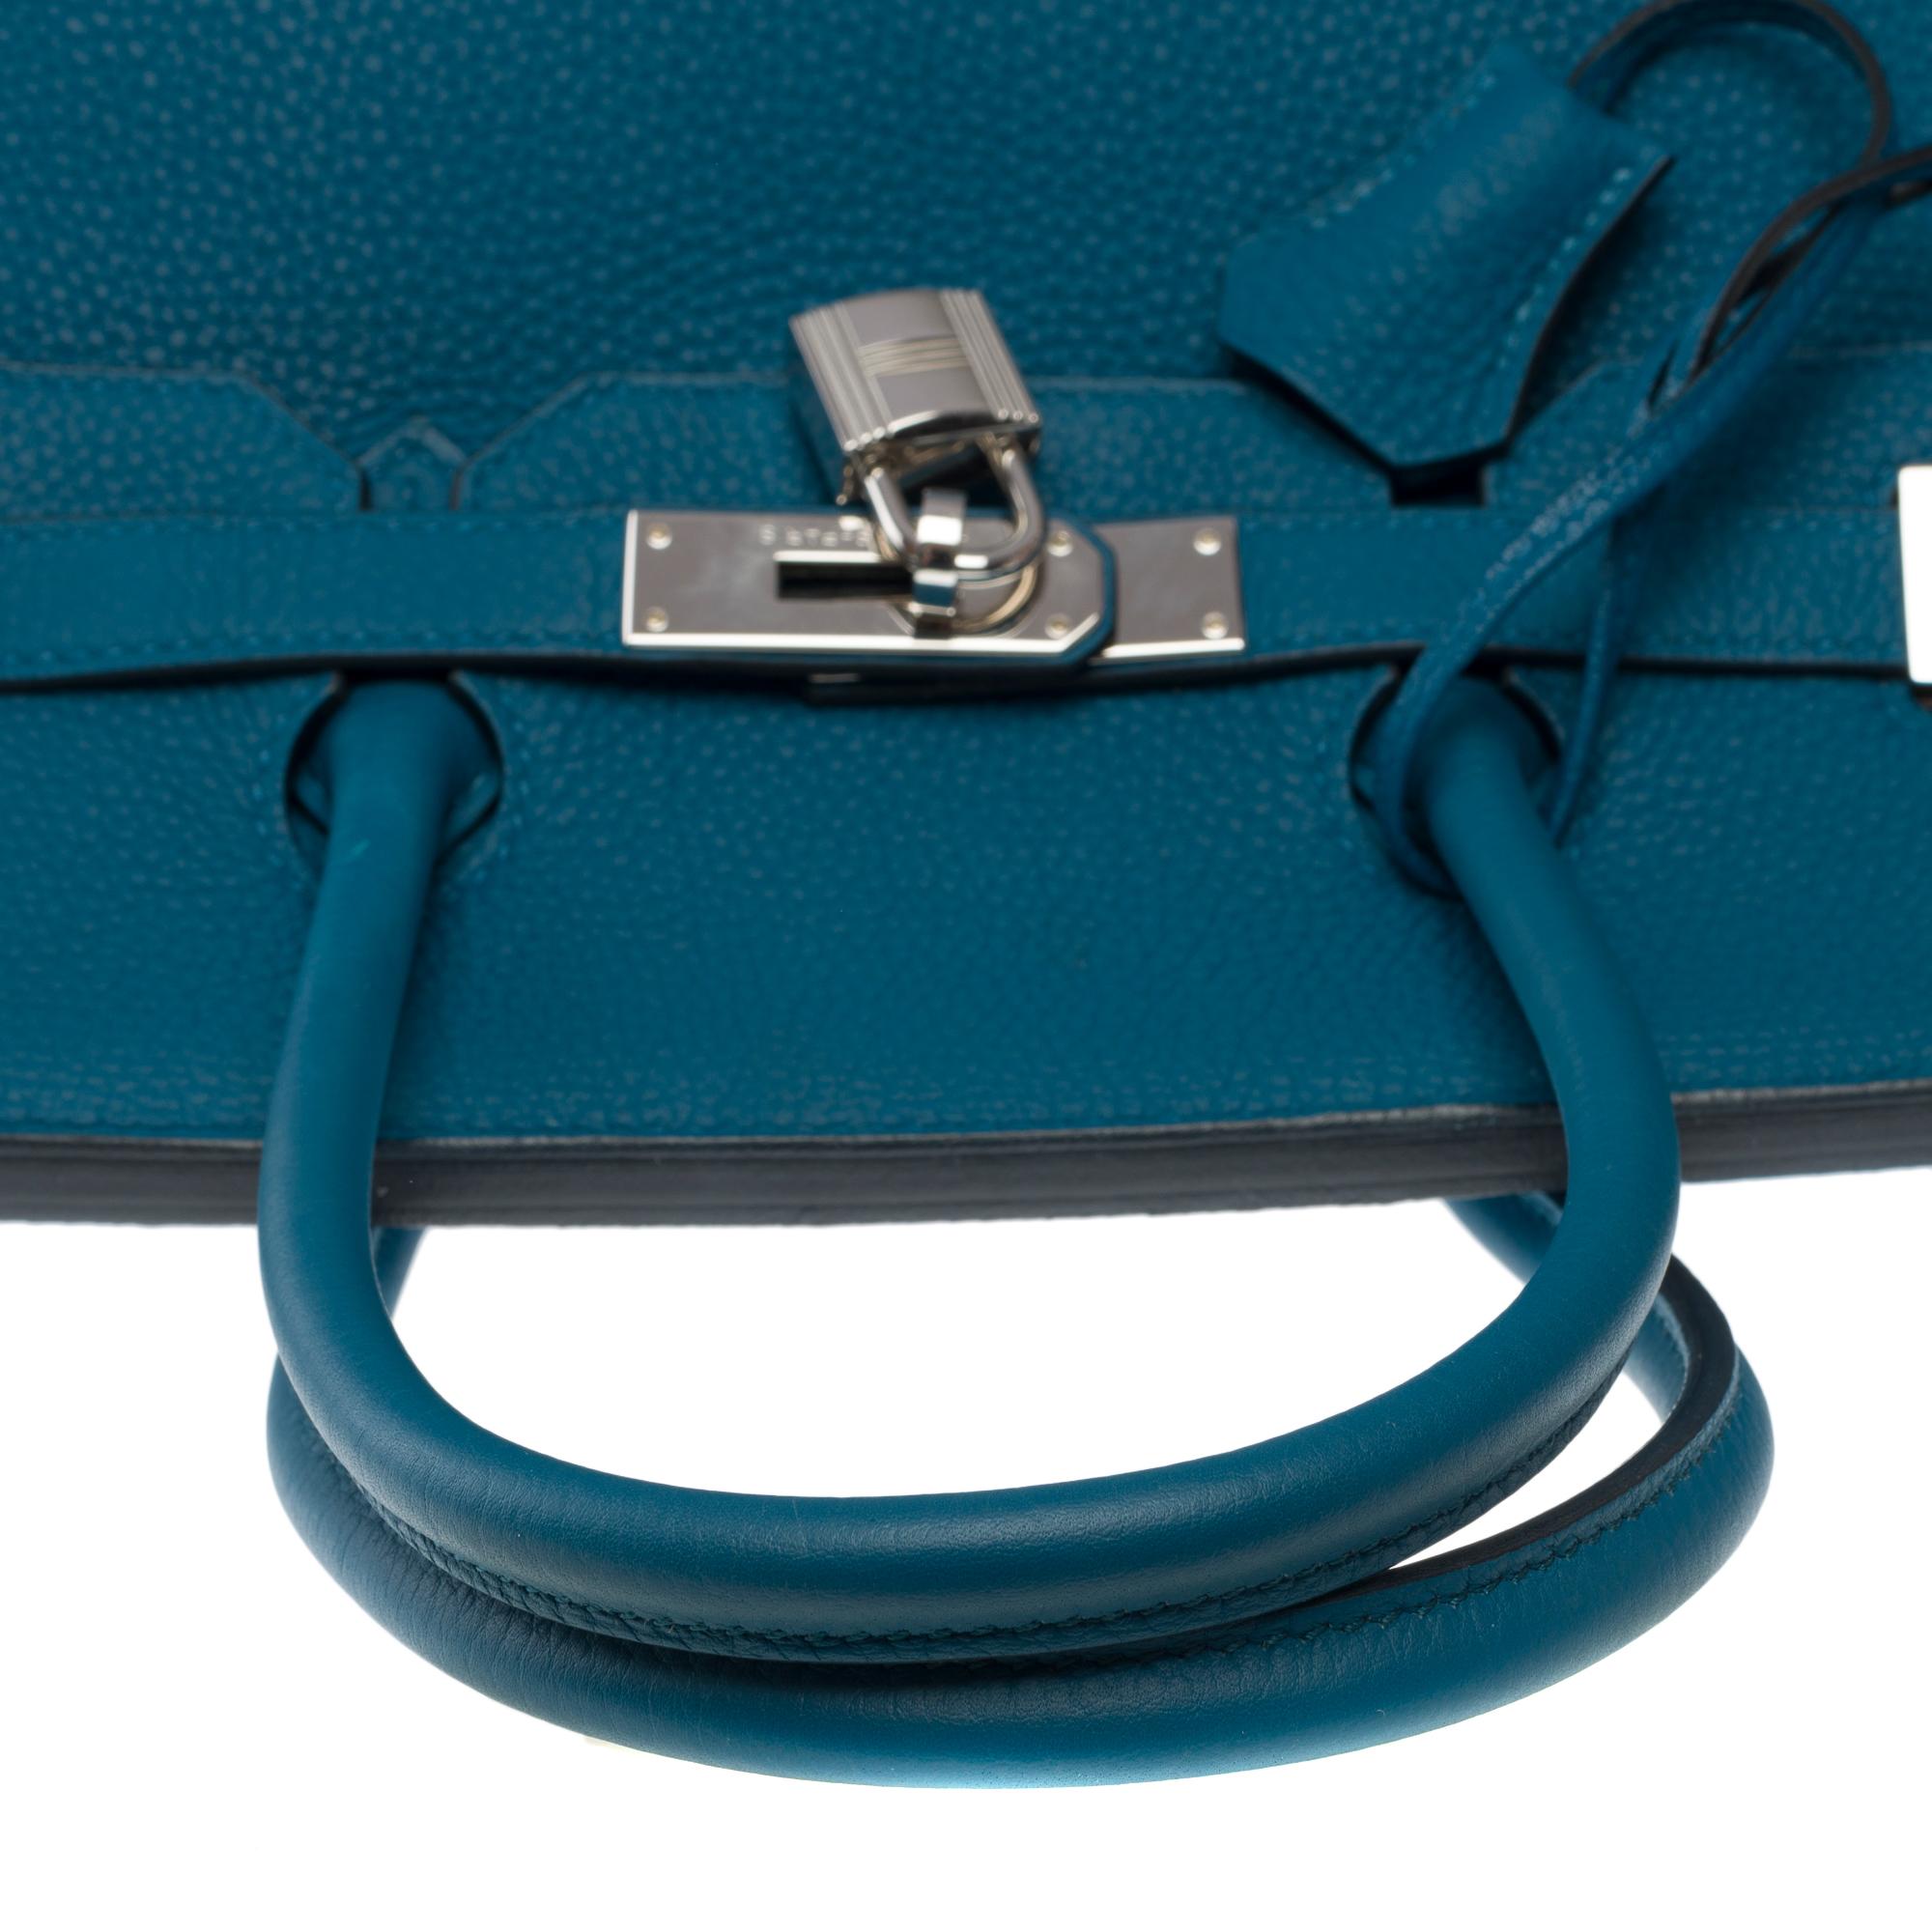 Amazing Hermes Birkin 35 handbag in Bleu Colvert Togo leather, SHW For Sale 6